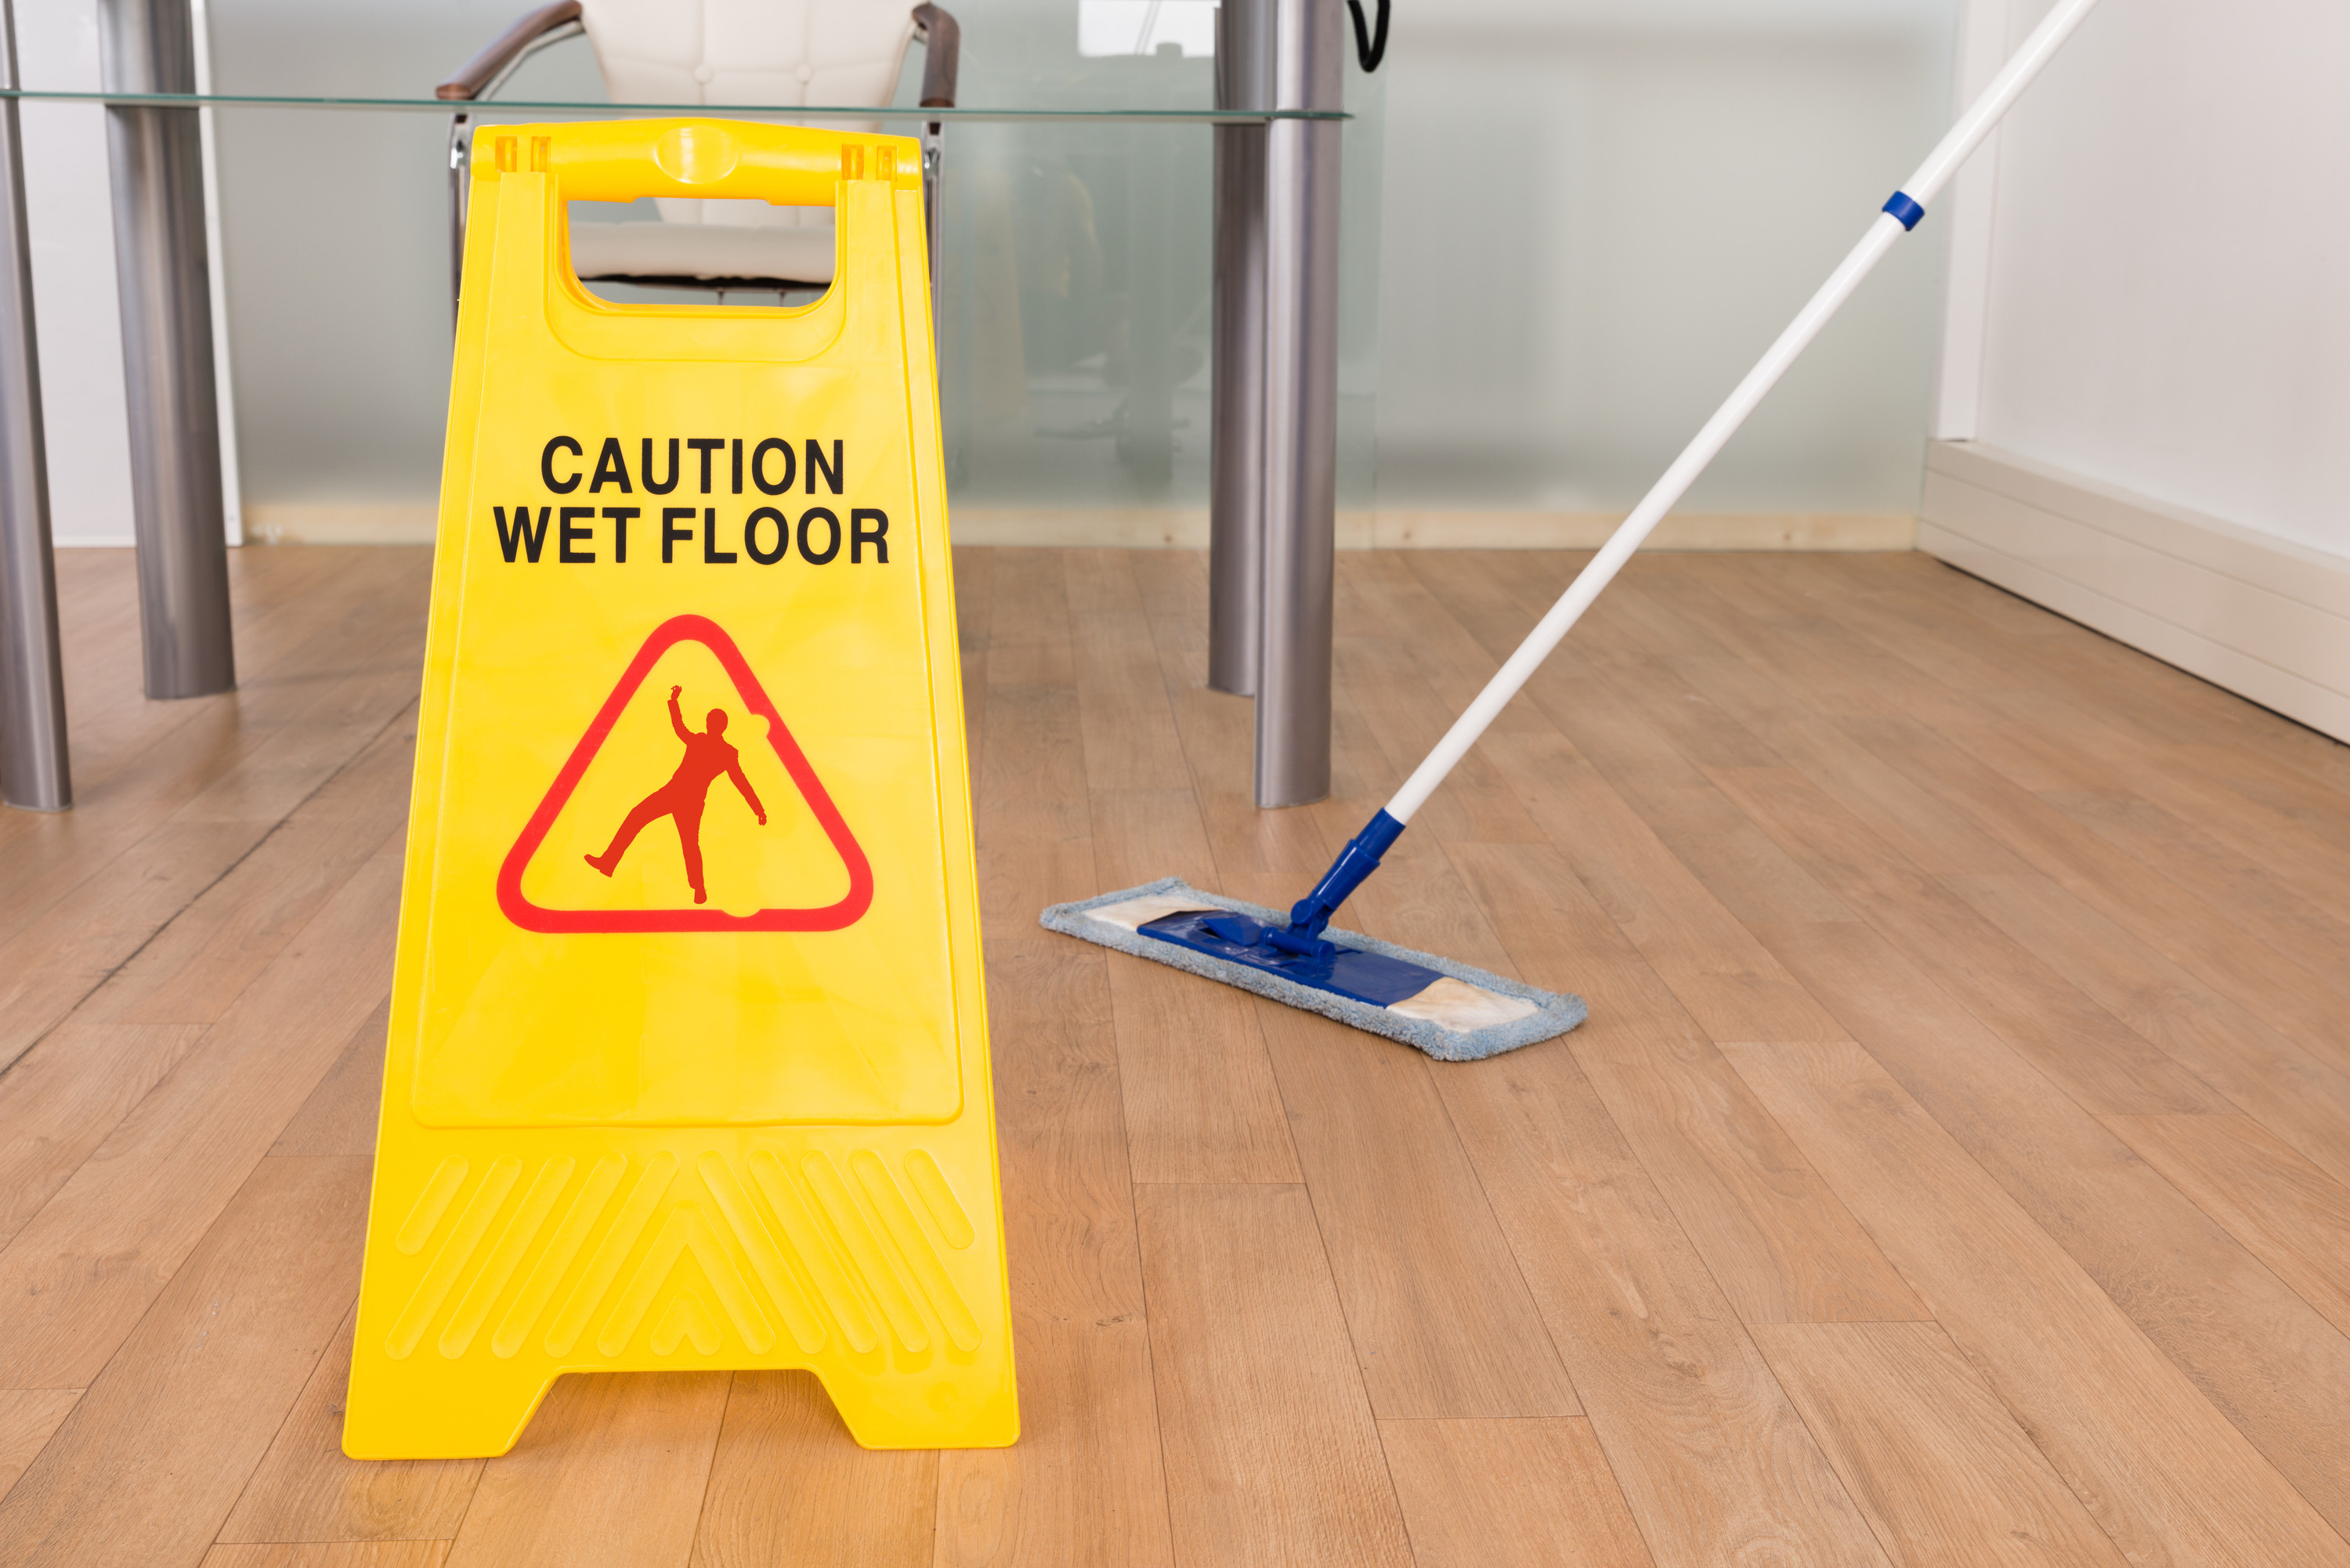 Caution wet floor sign on a wooden floor